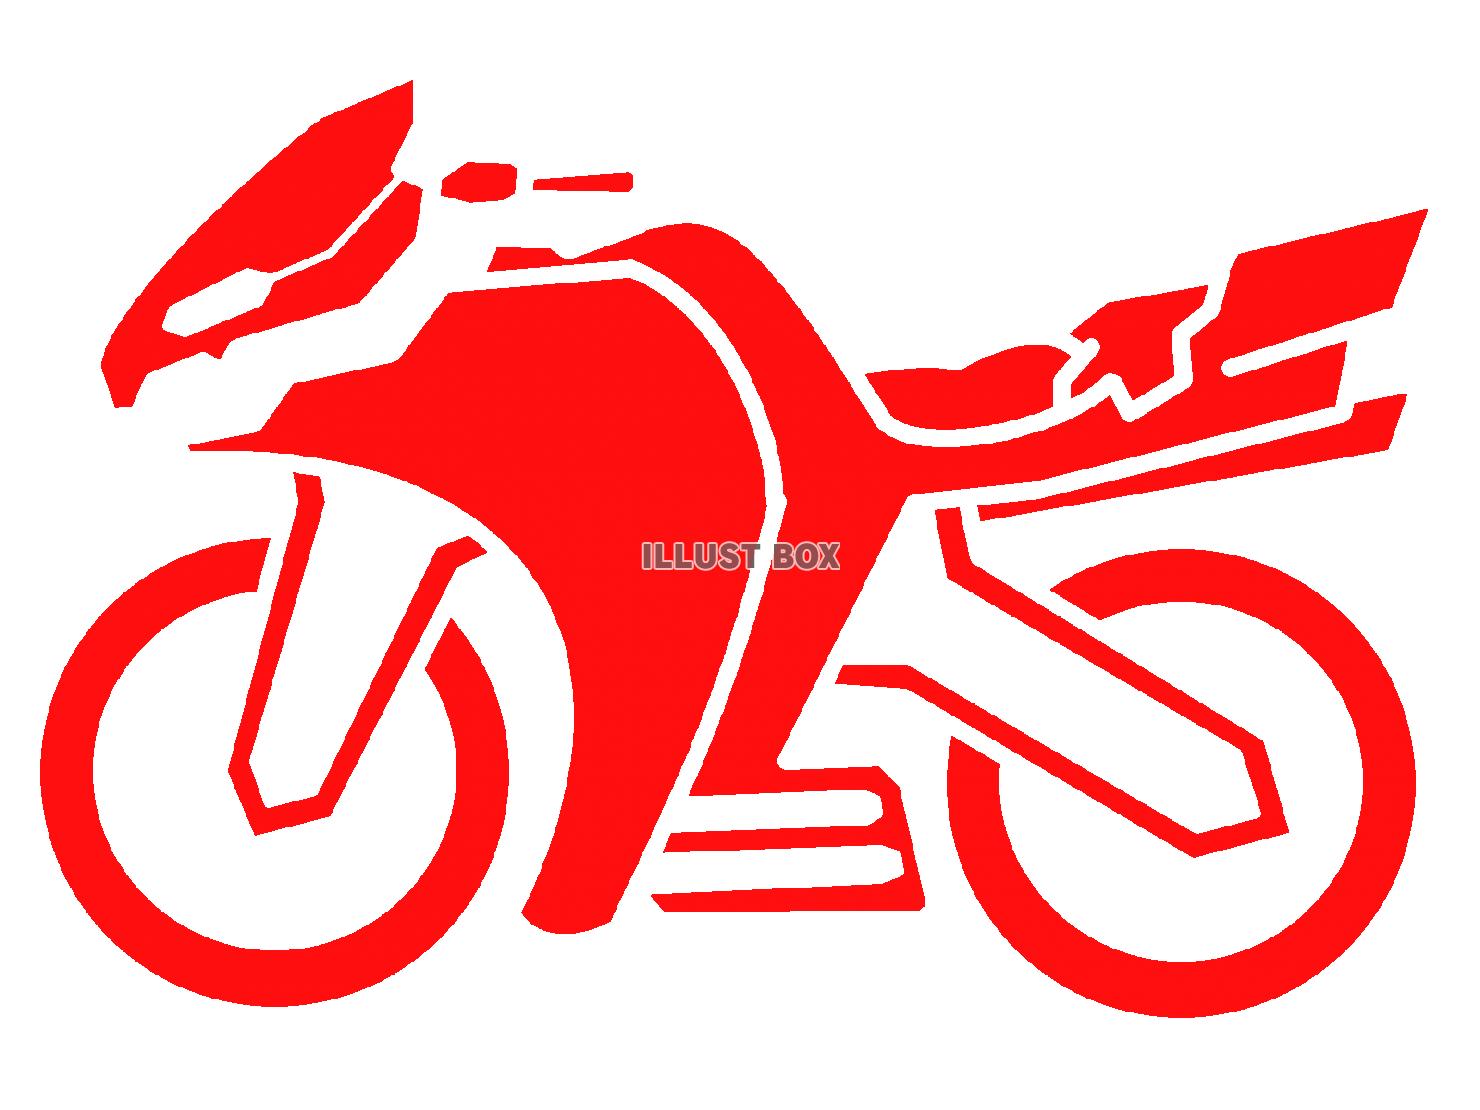 赤色のバイクのシルエットアイコン